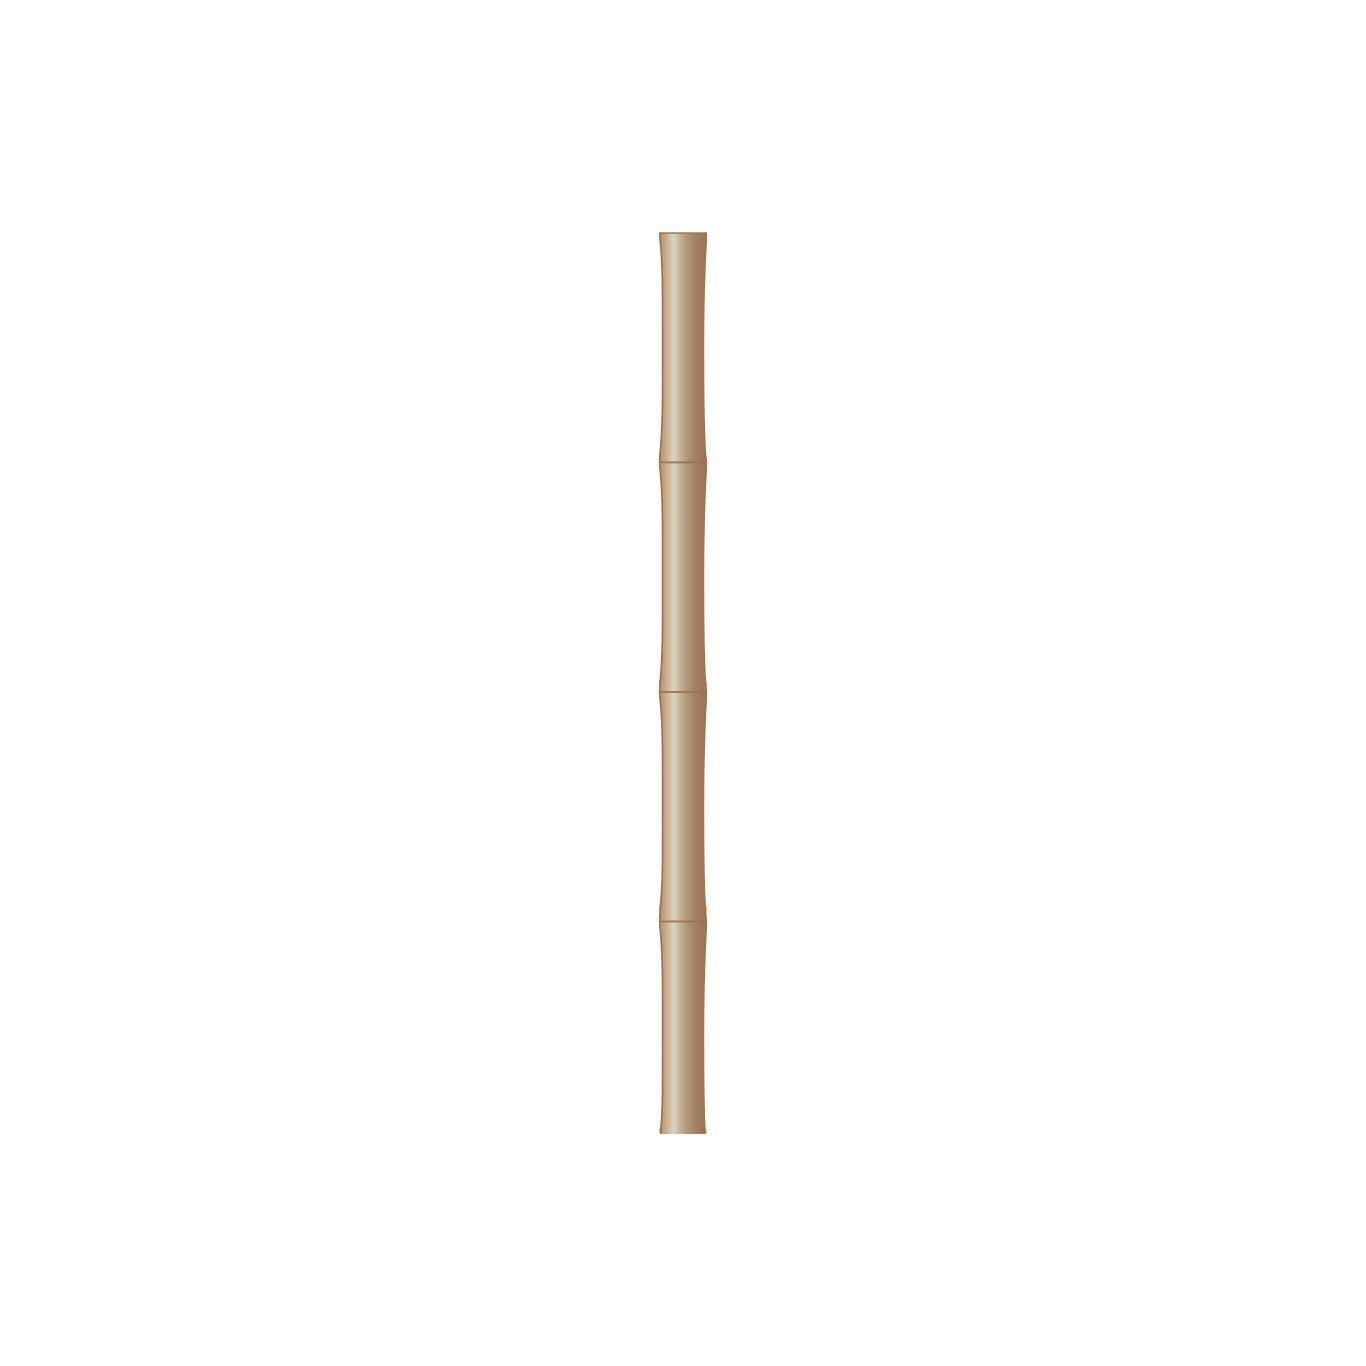 Snömarkeringskäpp Bambu utan reflex (100-pack) L-1800 mm diam 16-18 mm